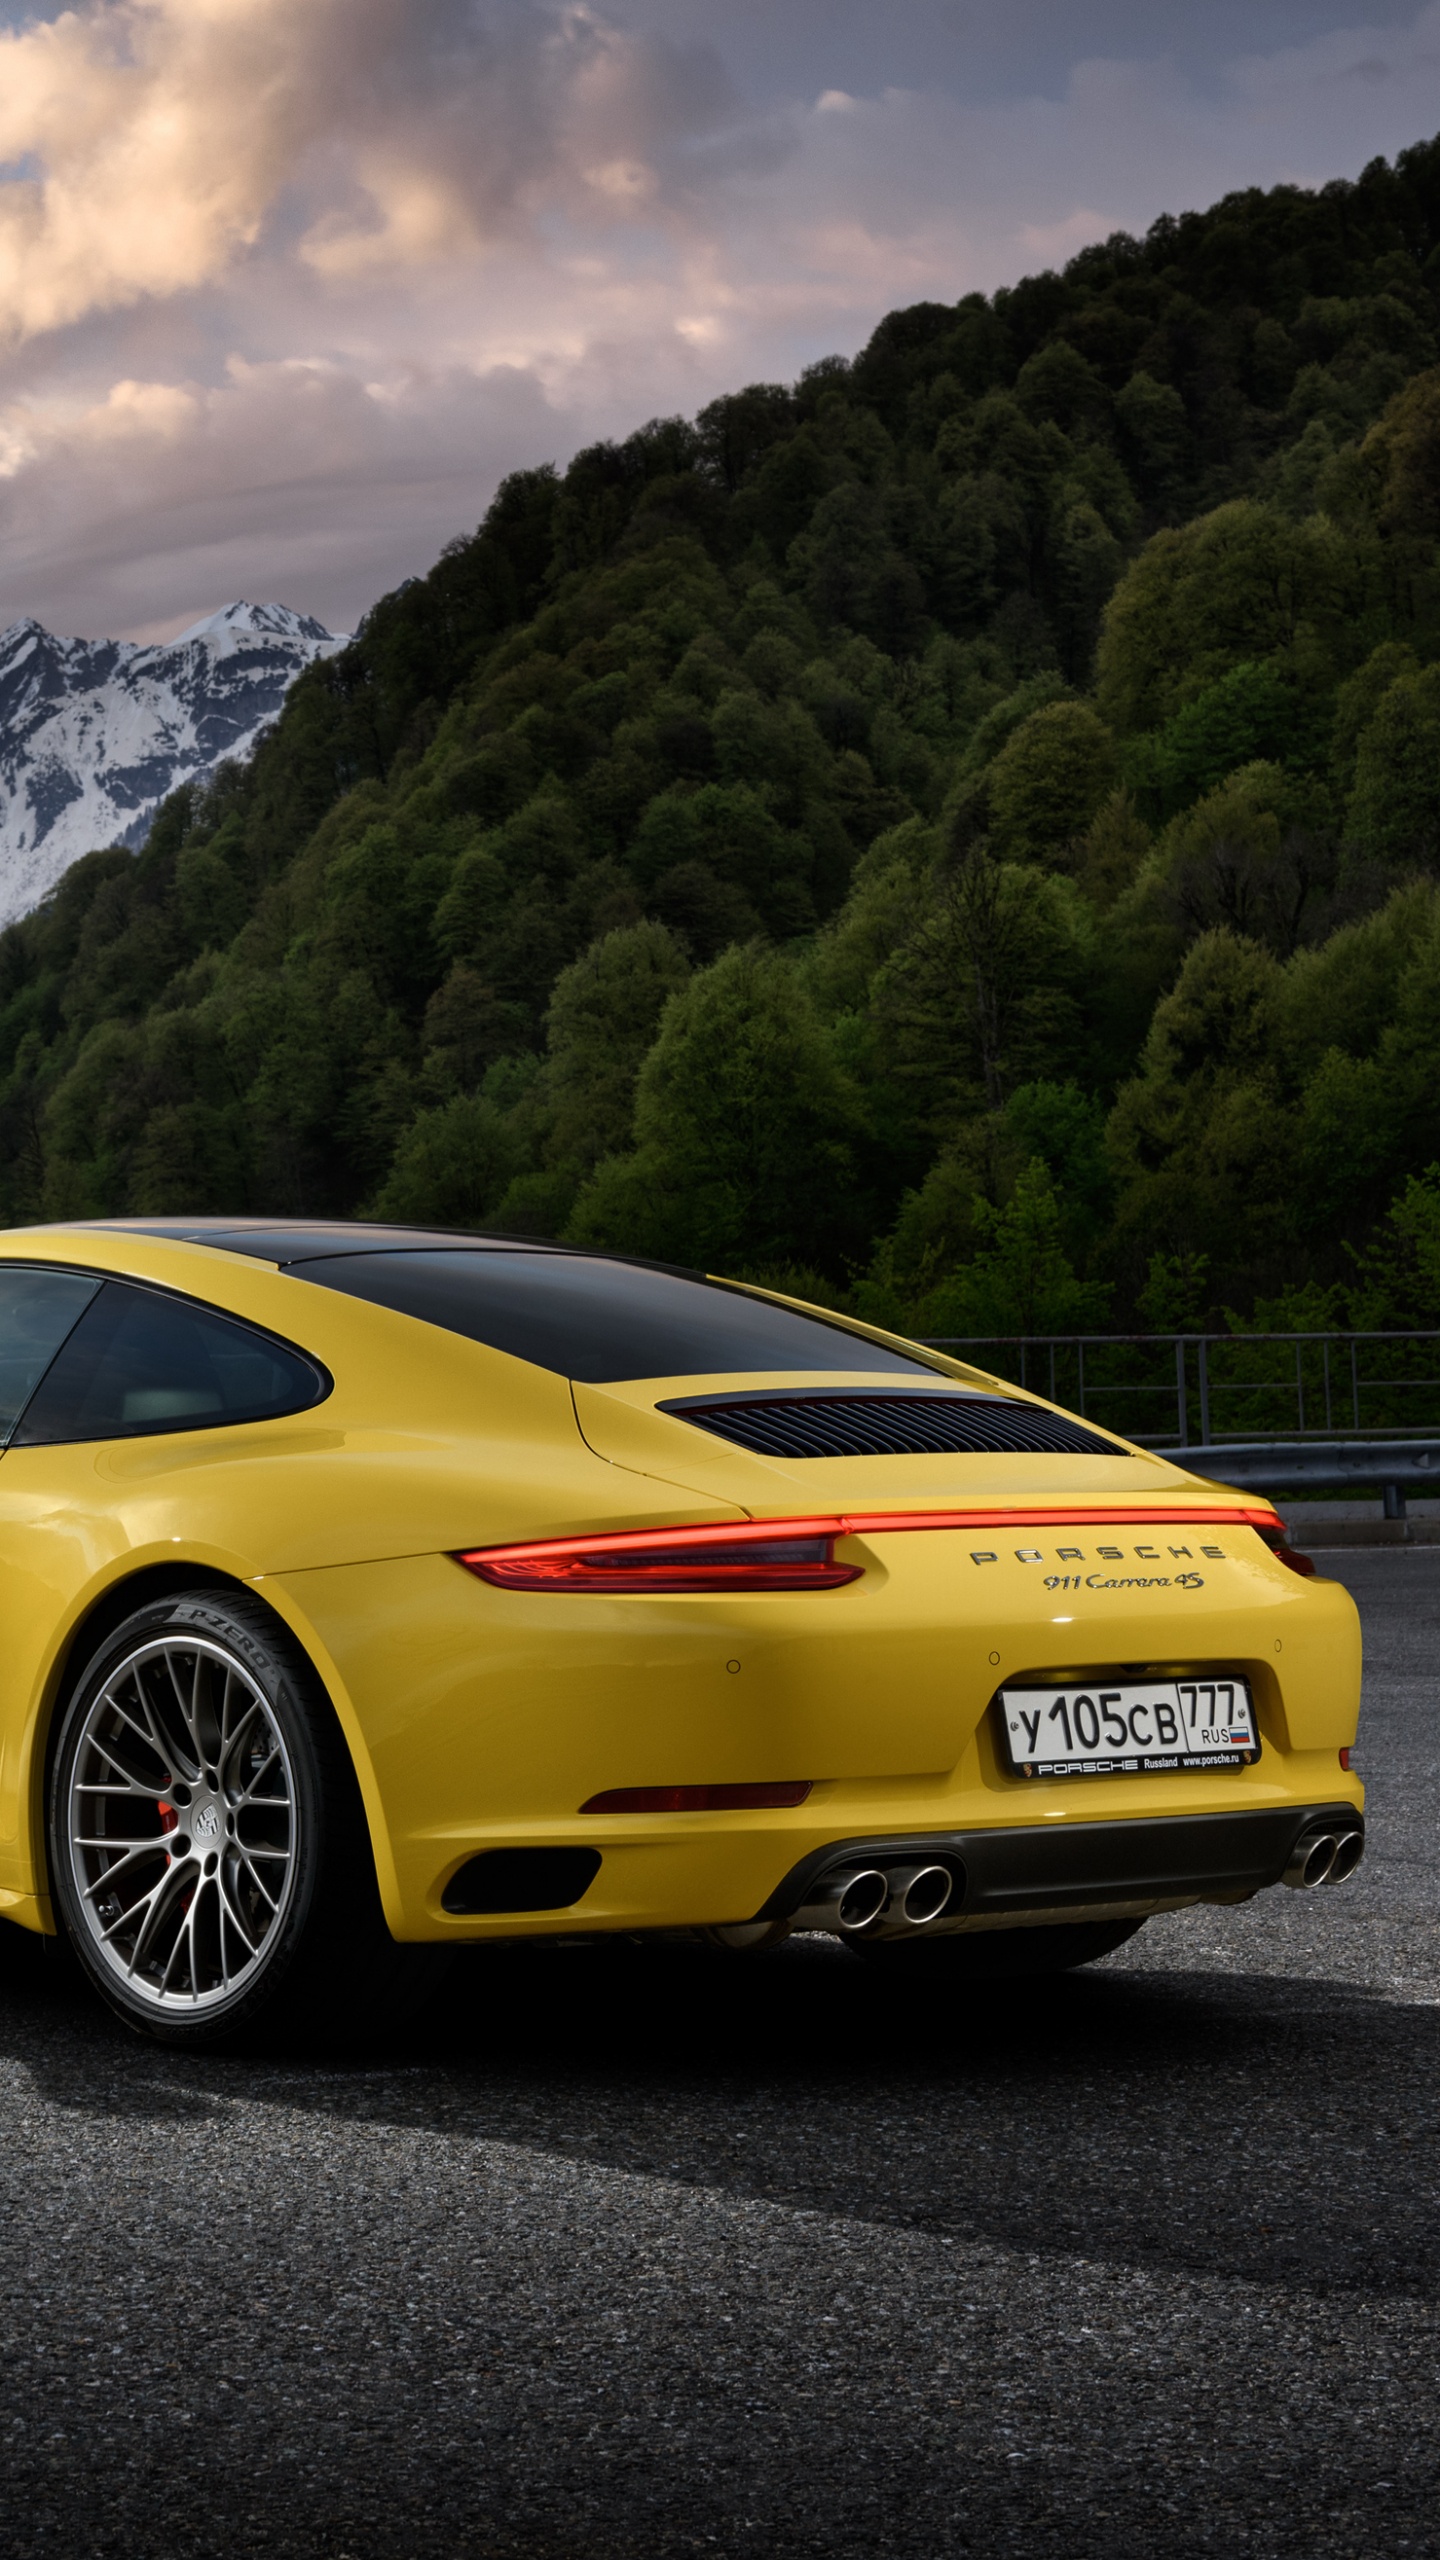 Gelber Porsche 911 Auf Der Straße in Der Nähe Des Berges Tagsüber. Wallpaper in 1440x2560 Resolution